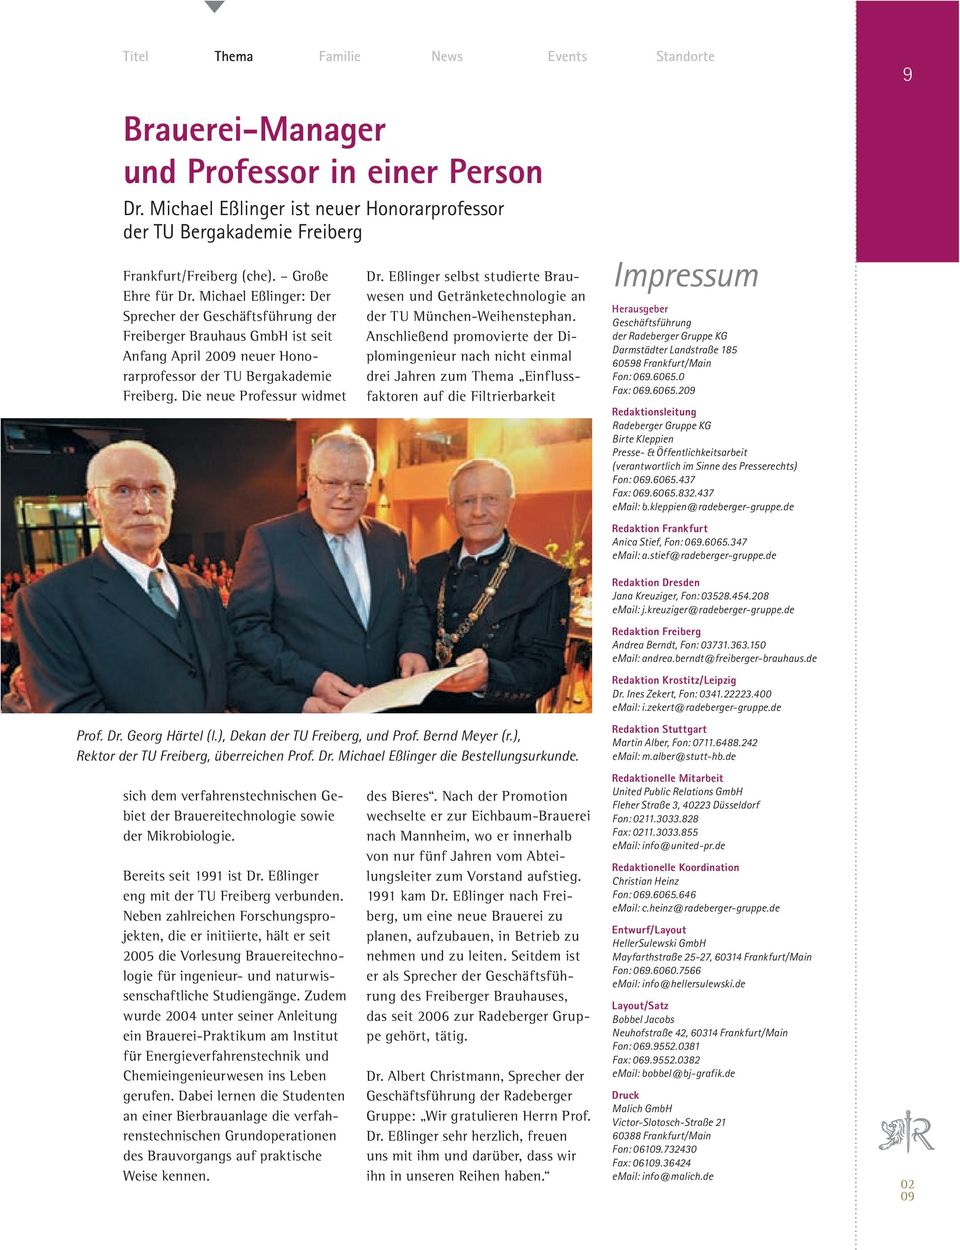 Die neue Professur widmet Dr. Eßlinger selbst studierte Brauwesen und Getränketechnologie an der TU München-Weihenstephan.